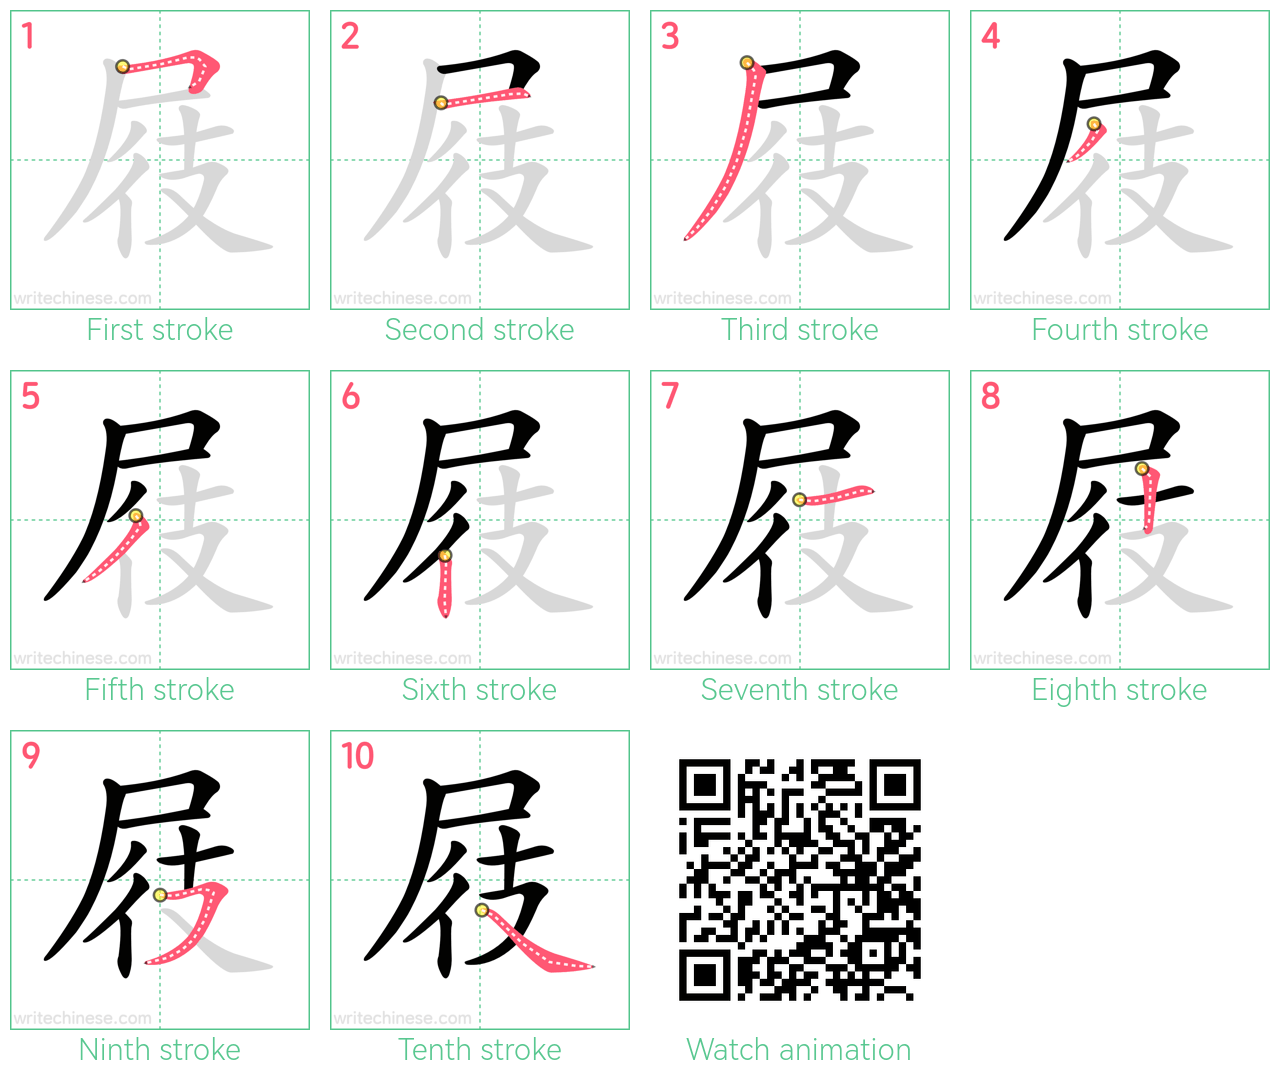 屐 step-by-step stroke order diagrams